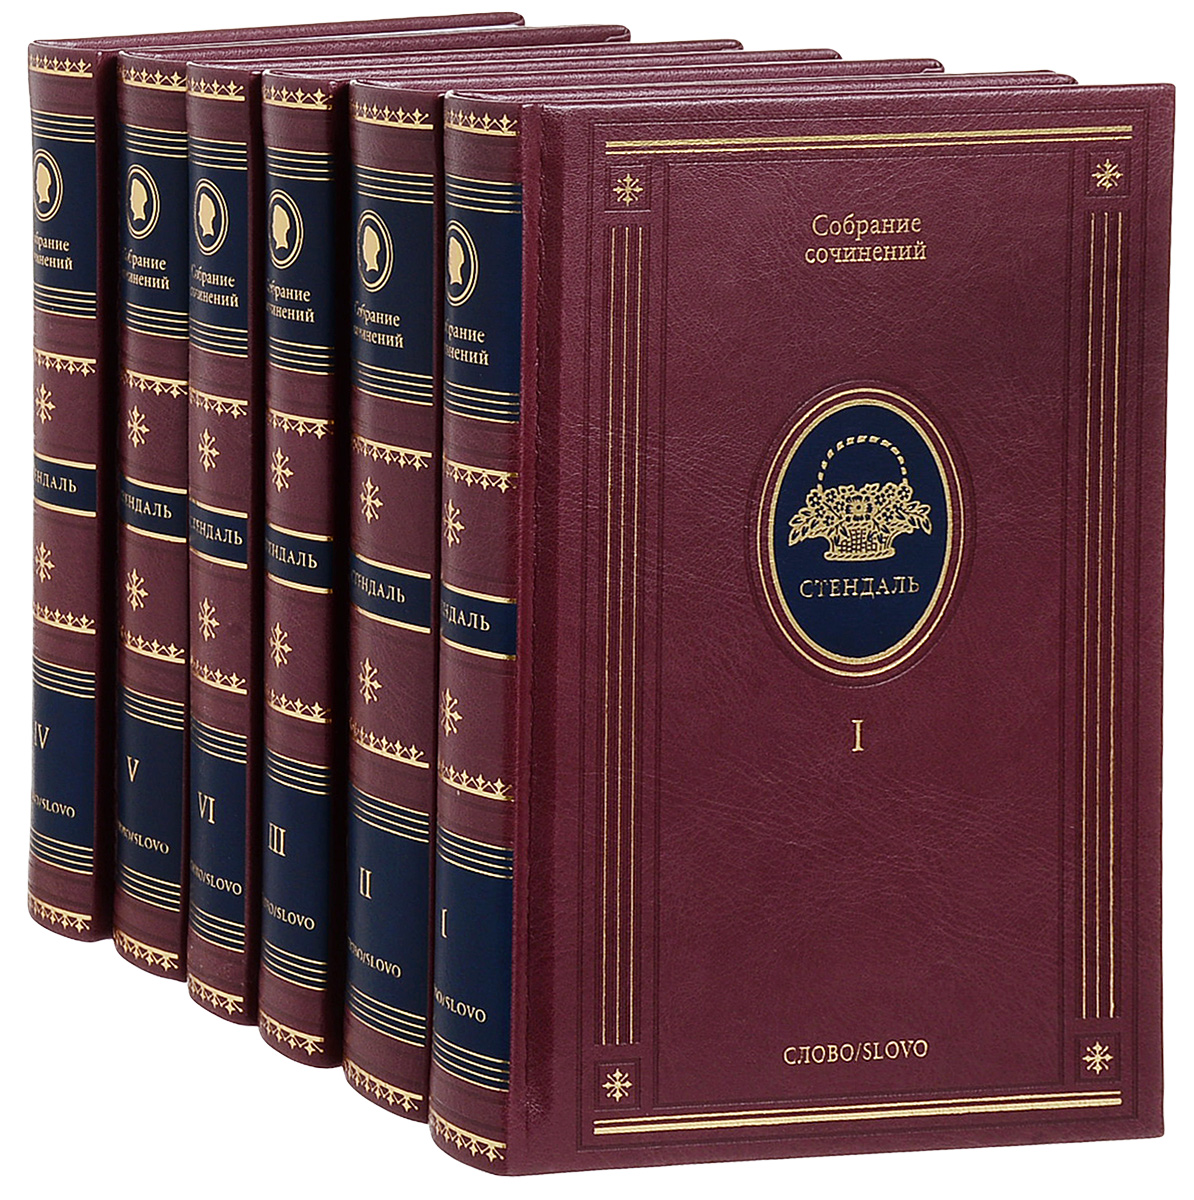 Стендаль. Собрание сочинений в 6 томах (подарочный комплект)